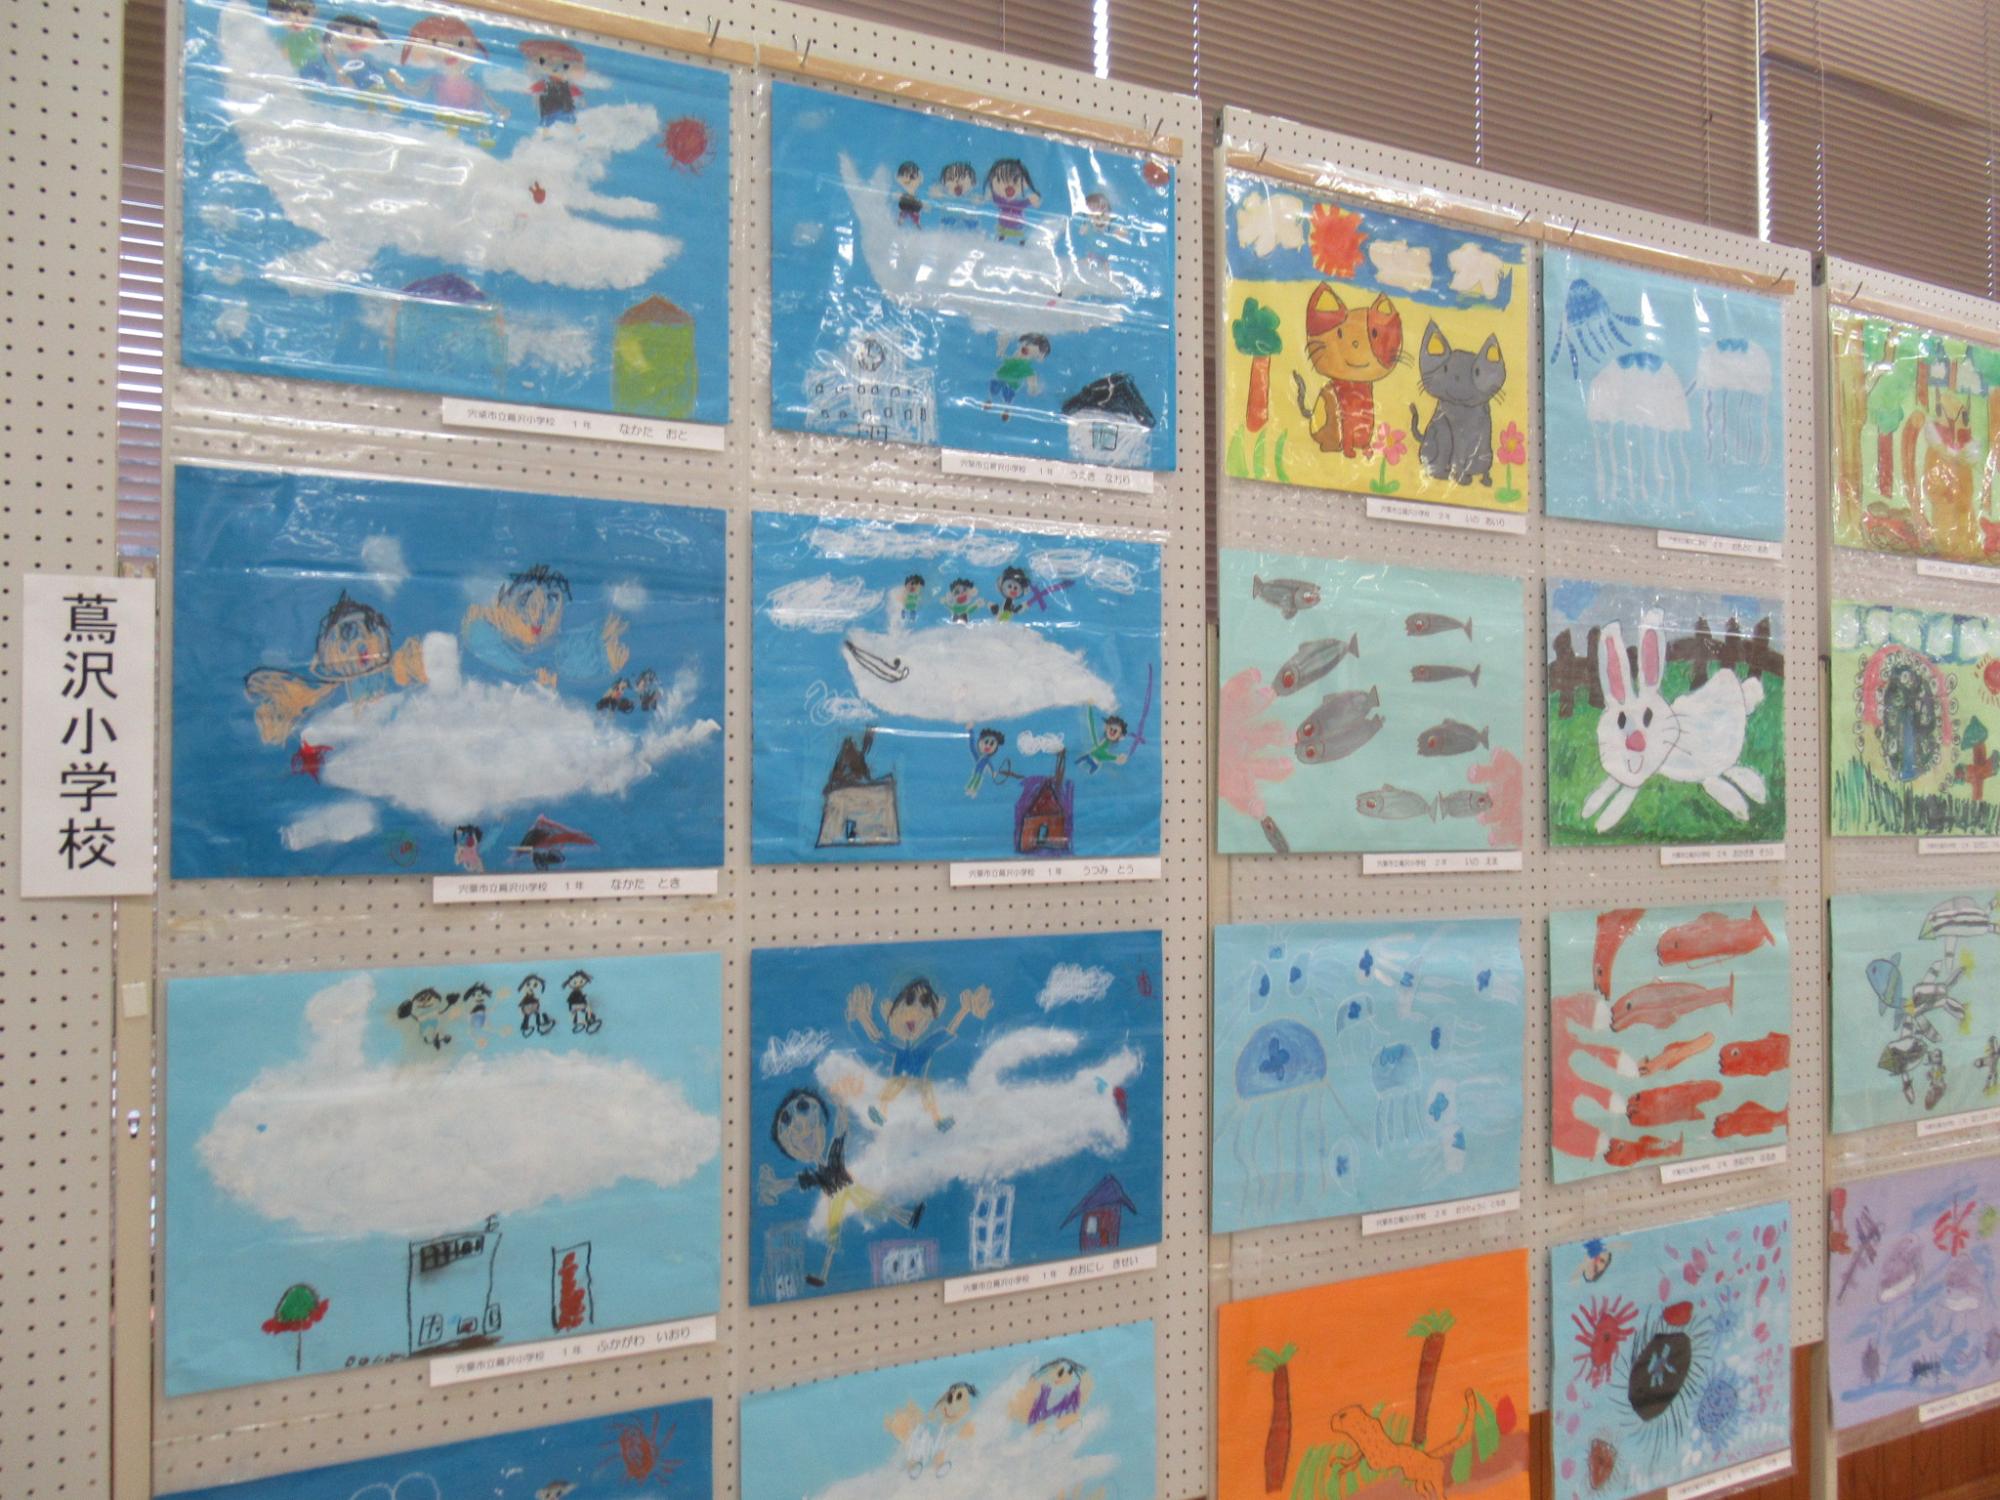 蔦沢小学校の生徒によるイラスト作品が展示されている写真